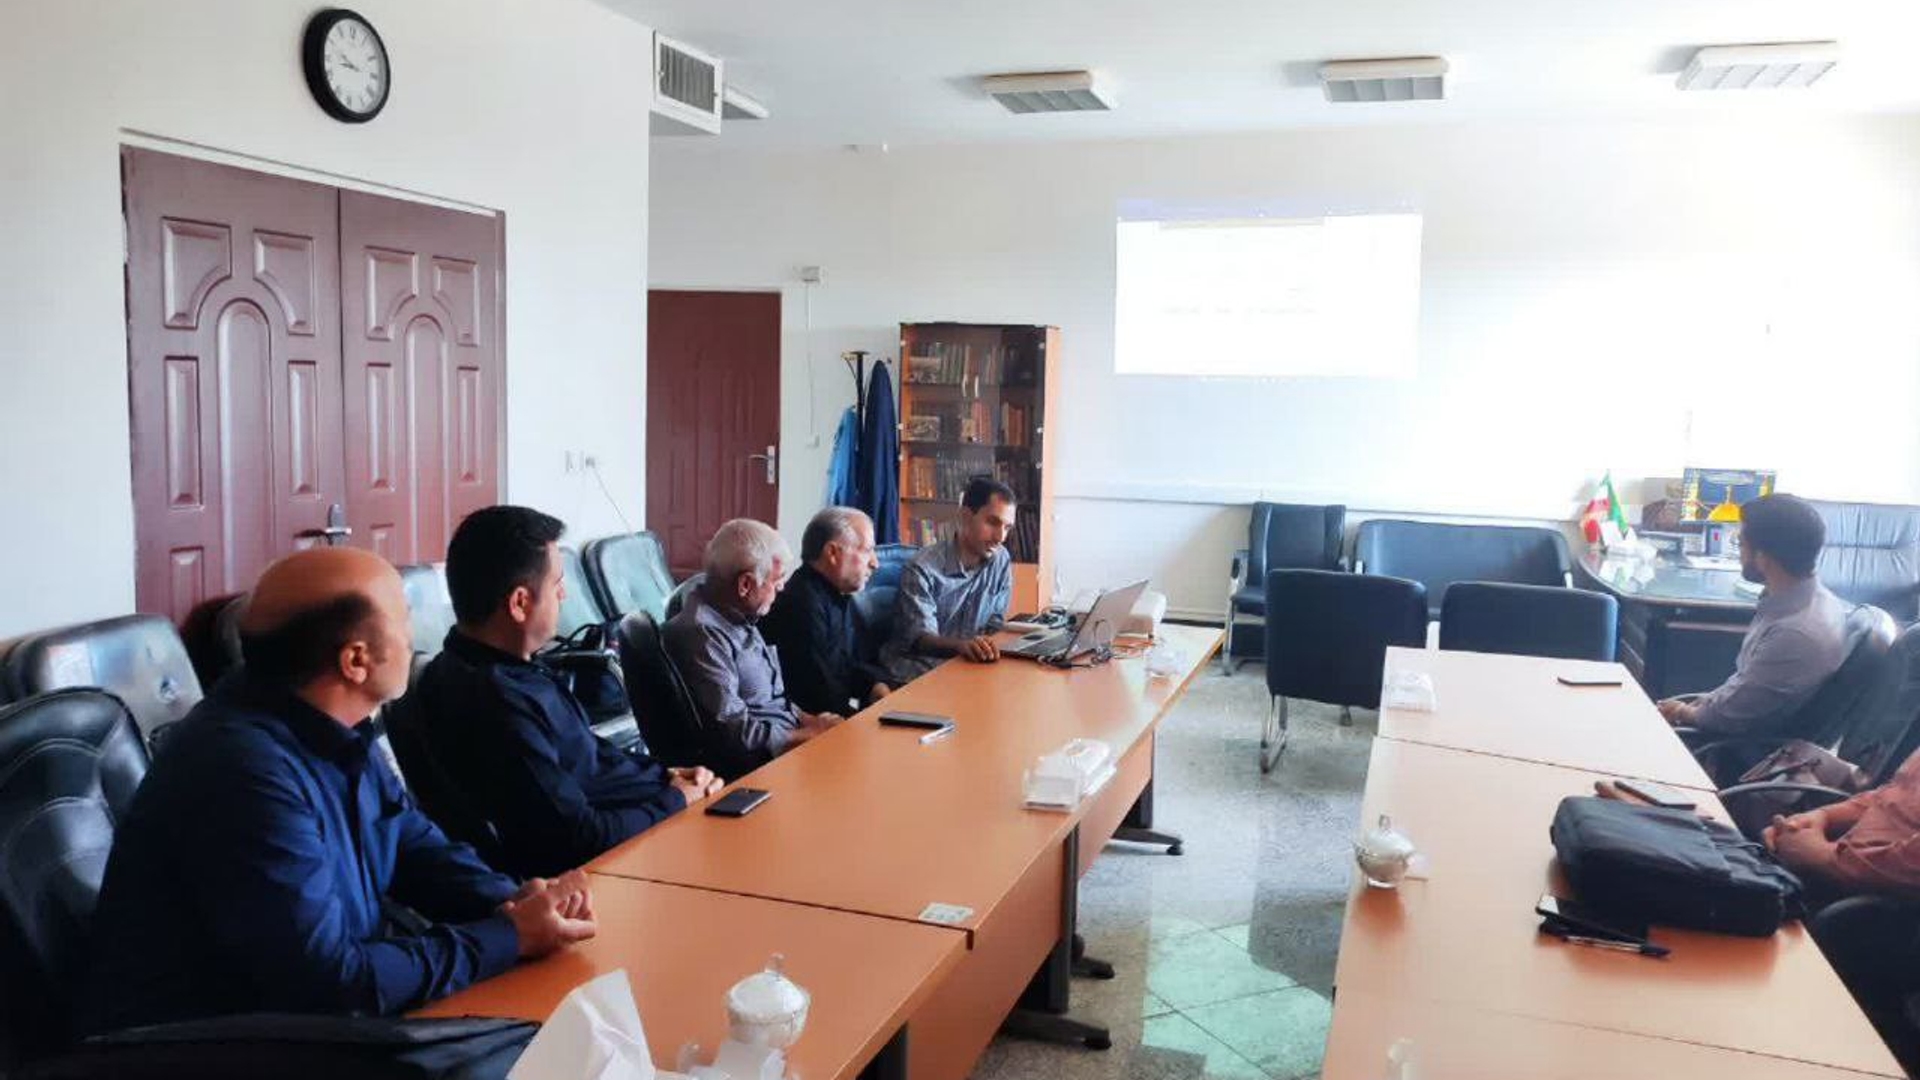 برگزاری دومین کارگاه آموزشی با عنوان آشنایی بیشتر با سامانه ستاد ویژه دهیاران بخش ساروق شهرستان اراک